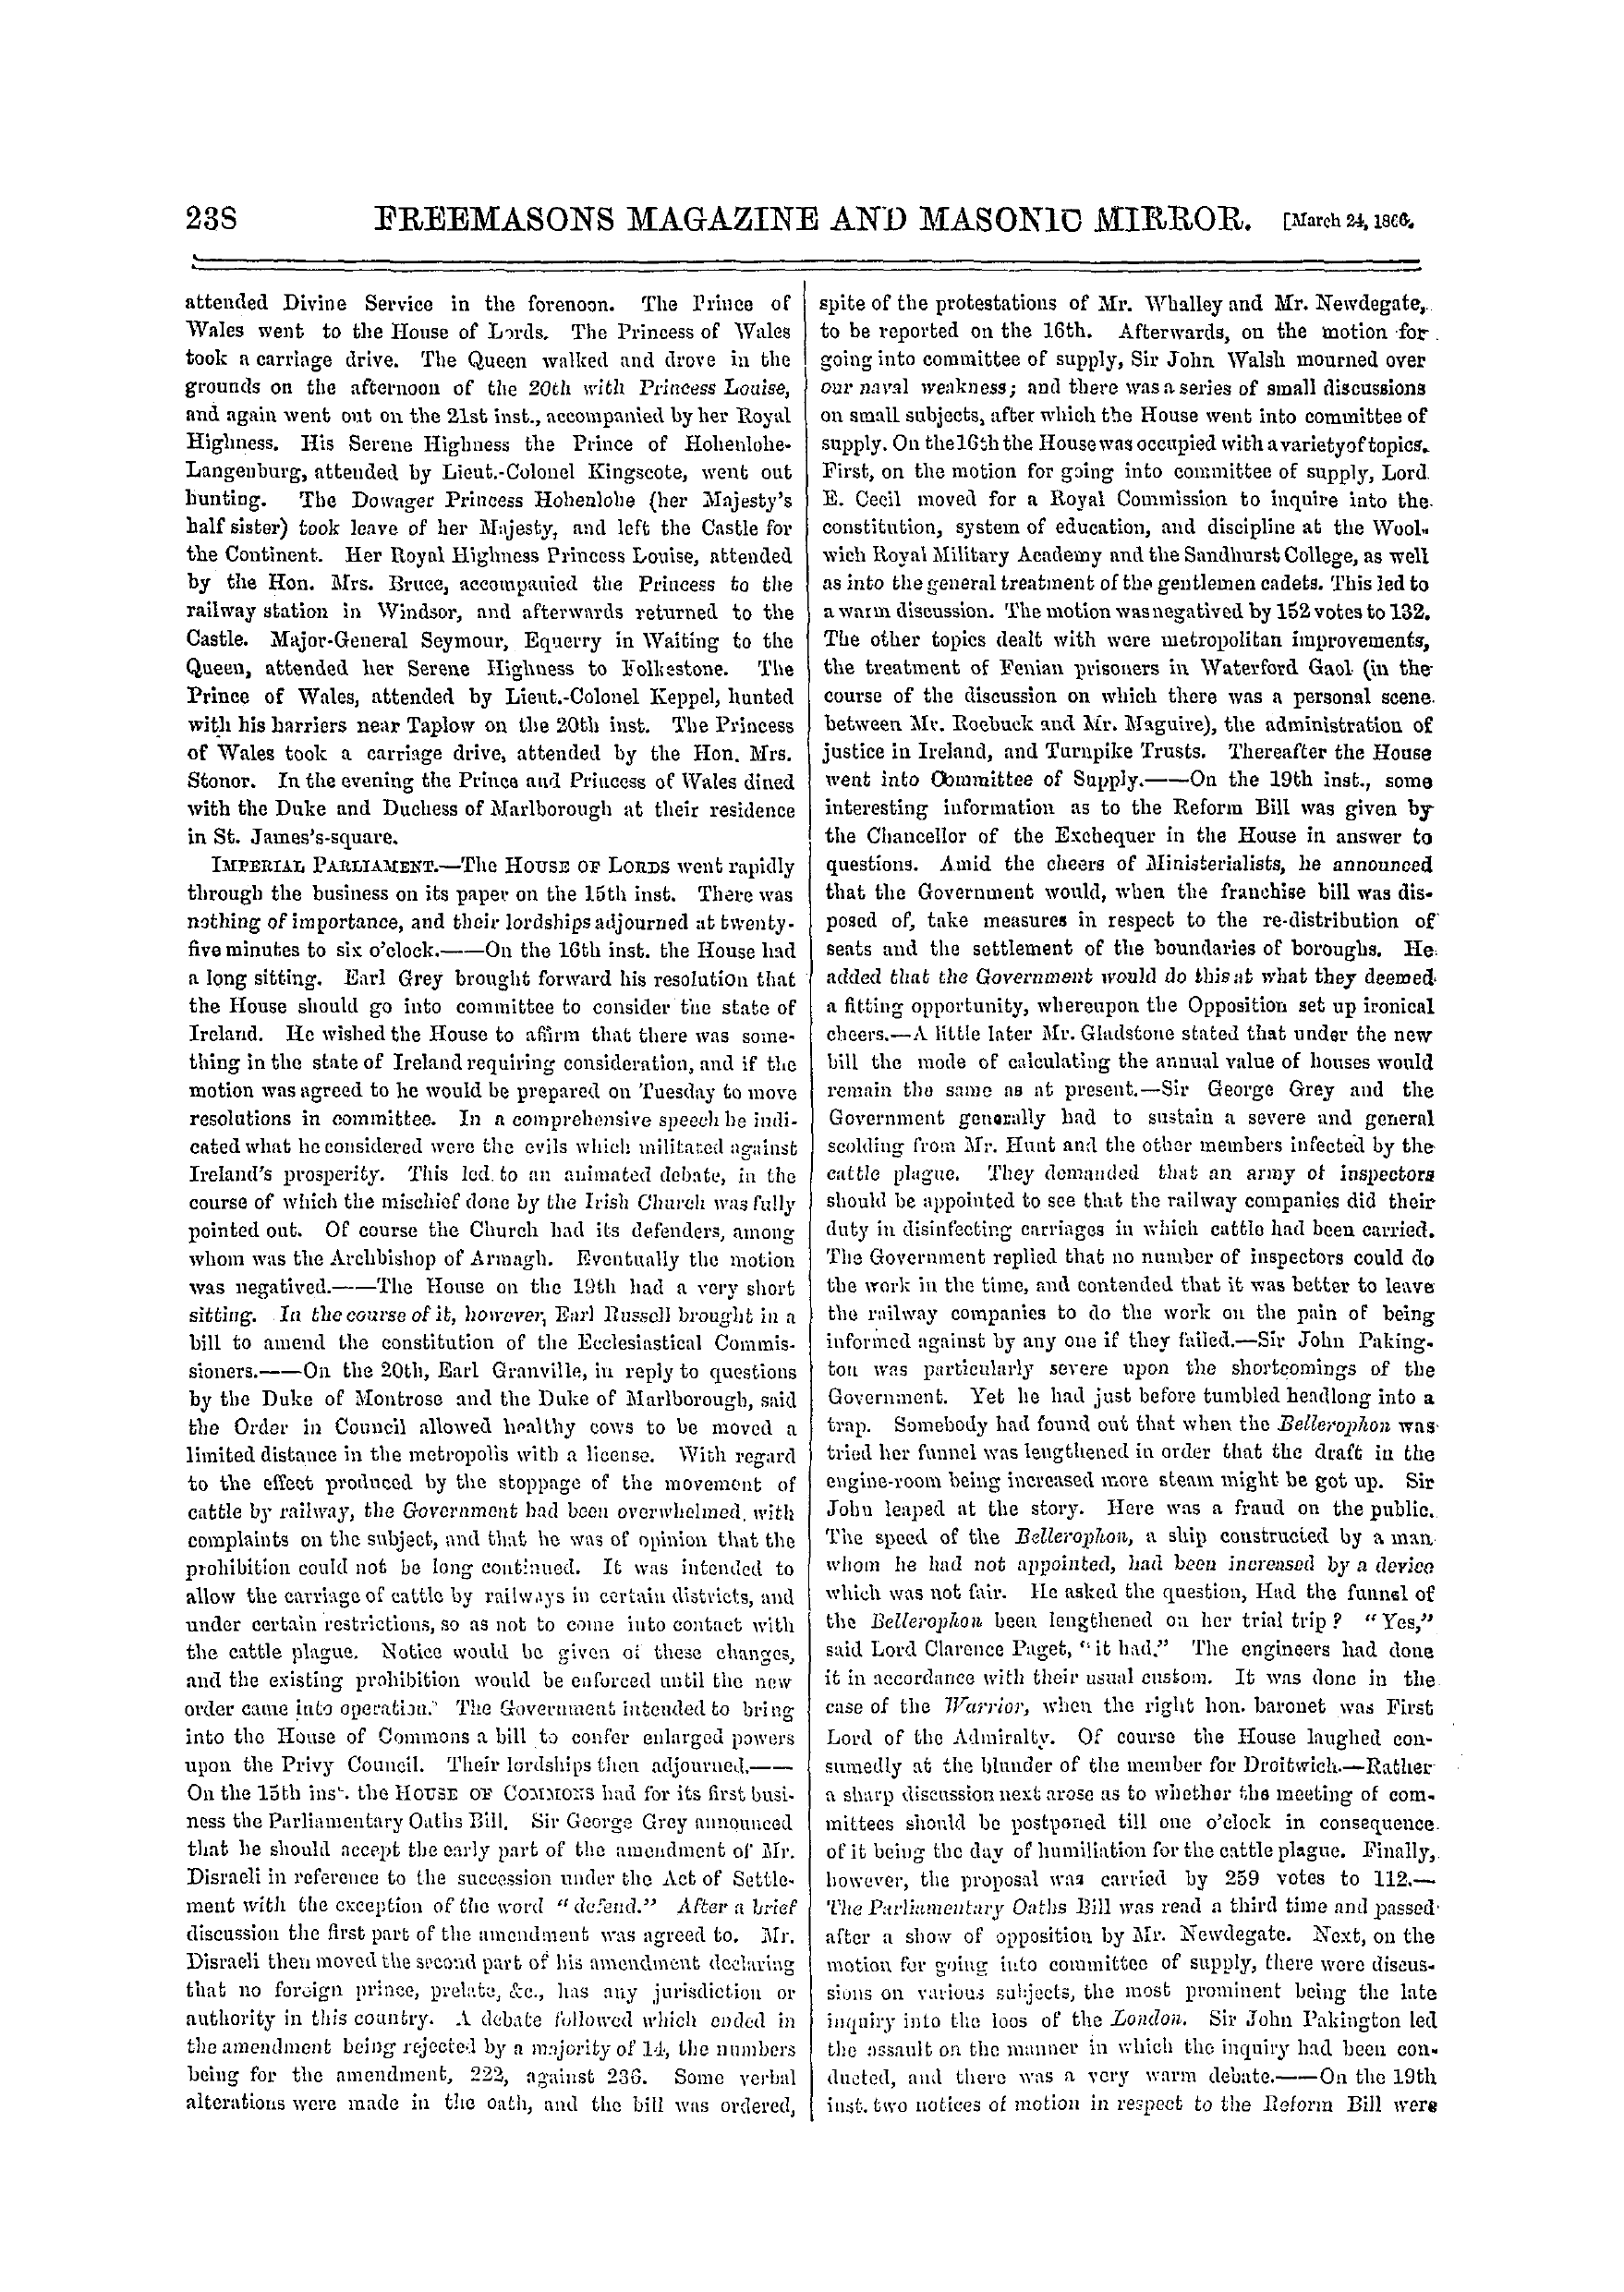 The Freemasons' Monthly Magazine: 1866-03-24: 18